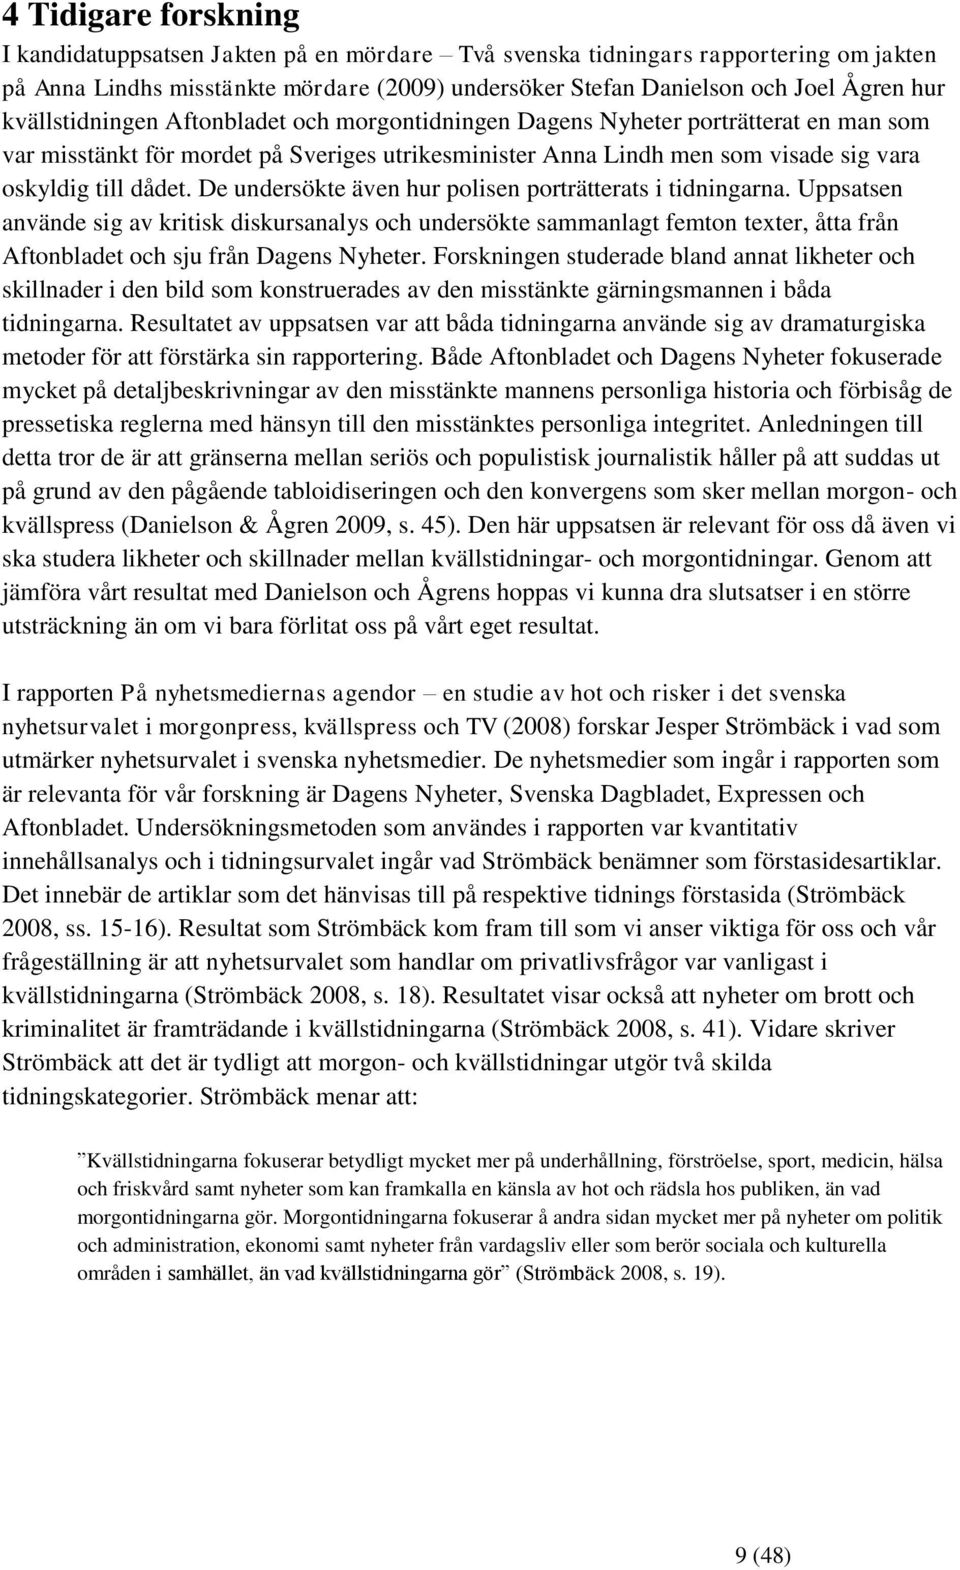 De undersökte även hur polisen porträtterats i tidningarna. Uppsatsen använde sig av kritisk diskursanalys och undersökte sammanlagt femton texter, åtta från Aftonbladet och sju från Dagens Nyheter.